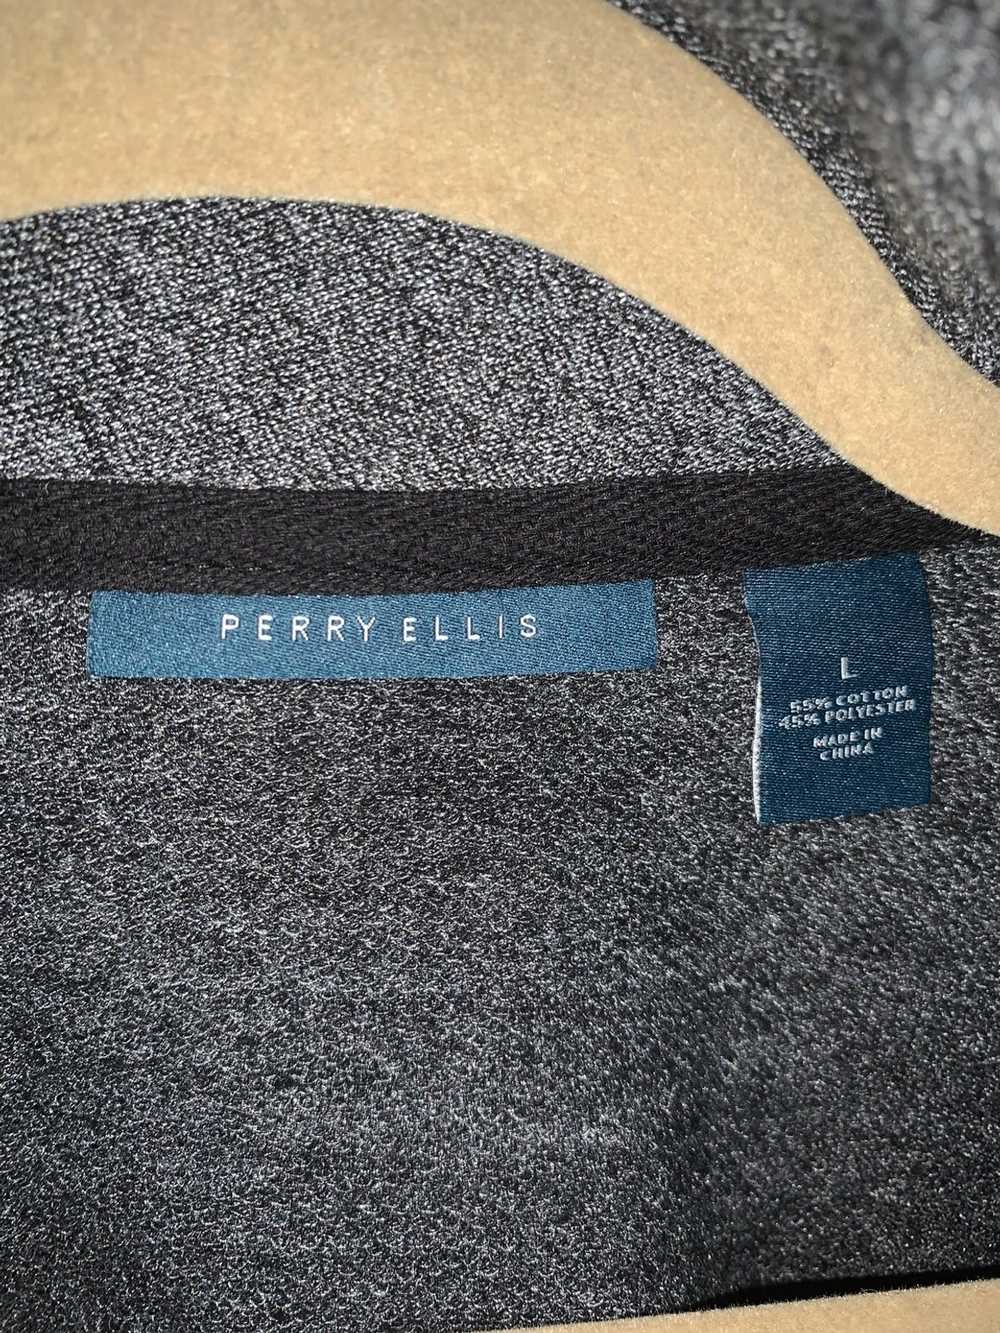 Perry Ellis Perry Ellis sweater - image 2